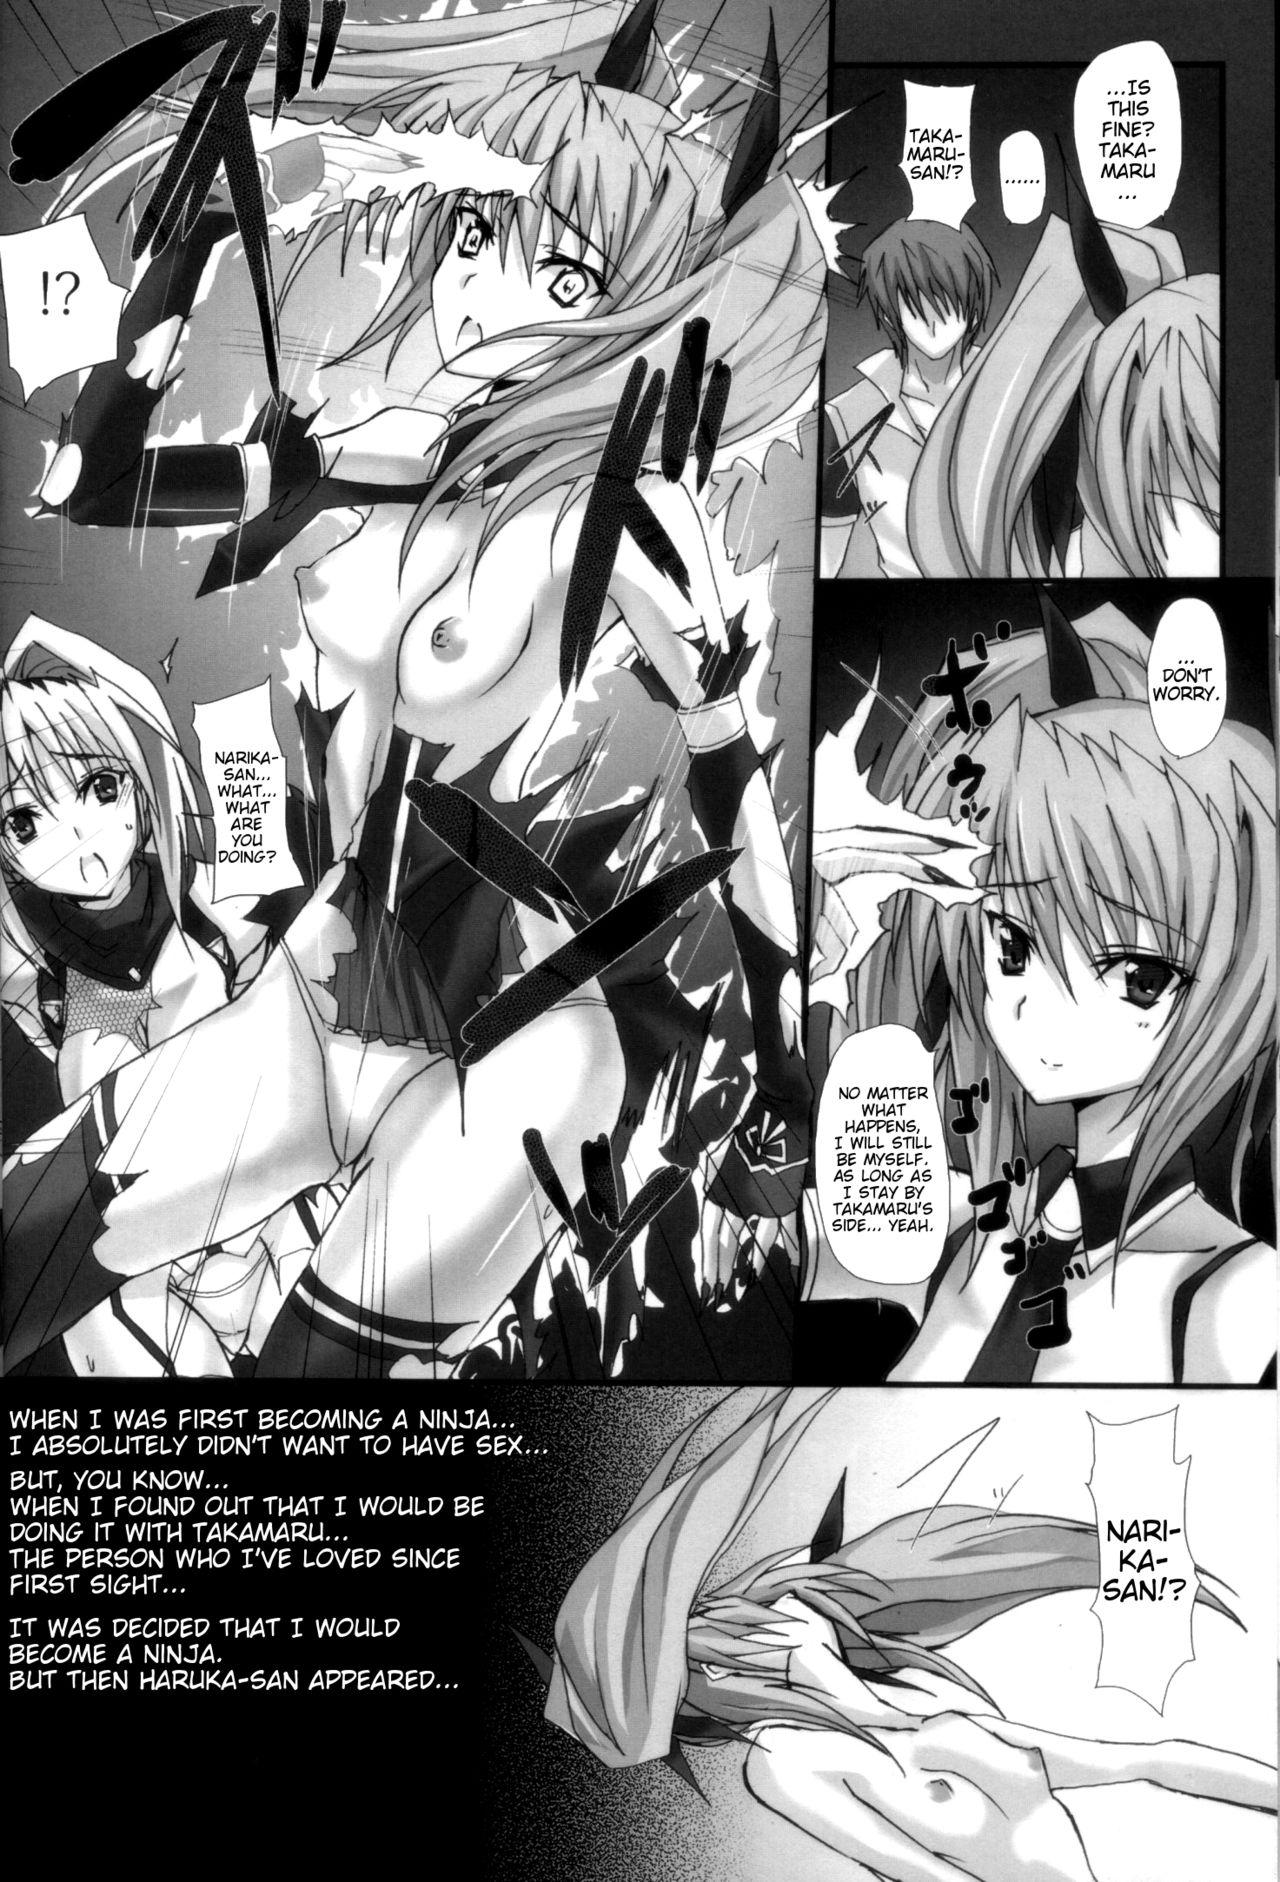 Handjob Yami wo Matoishi Homura wa Ono ga Mi wo Boukyaku no Gokuen e - Beat blades haruka Realitykings - Page 11